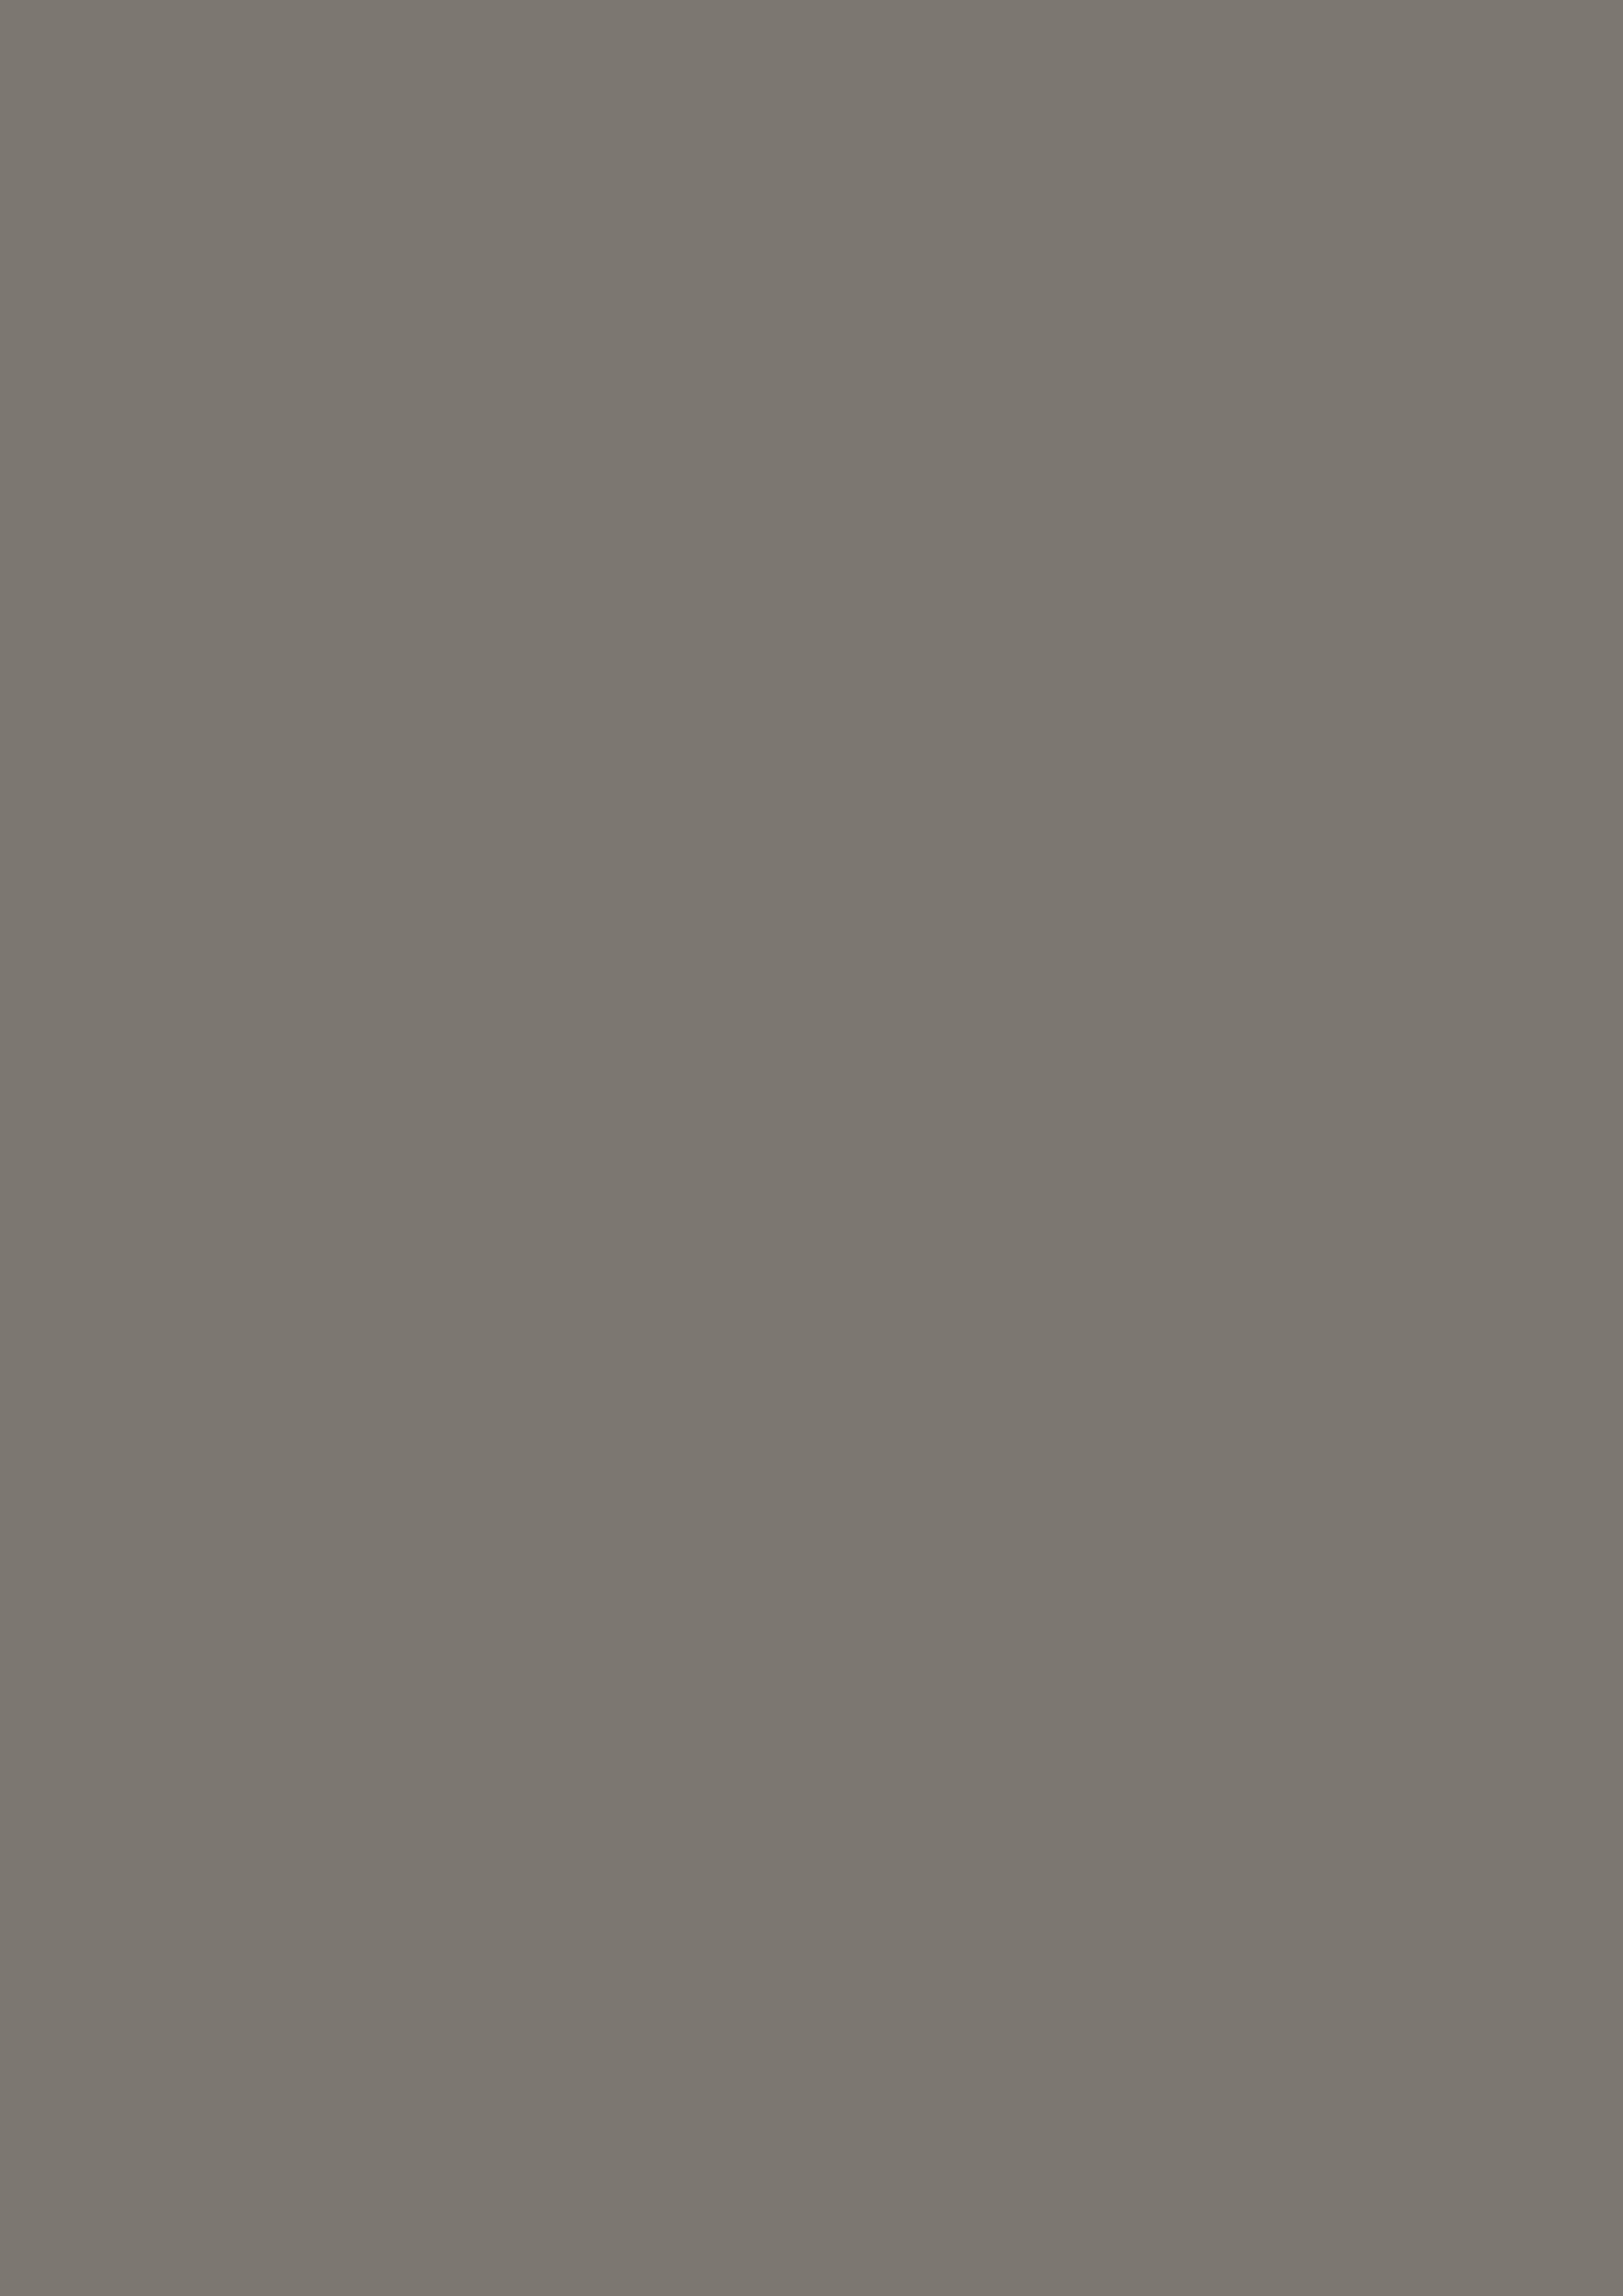 ПВХ пленка ГАУНТЛЕТ ГРЕЙ европейского качества для мебели и дверей от компании ЛАМИС | Каталог ПВХ пленок MULTIMA by IMAWELL 